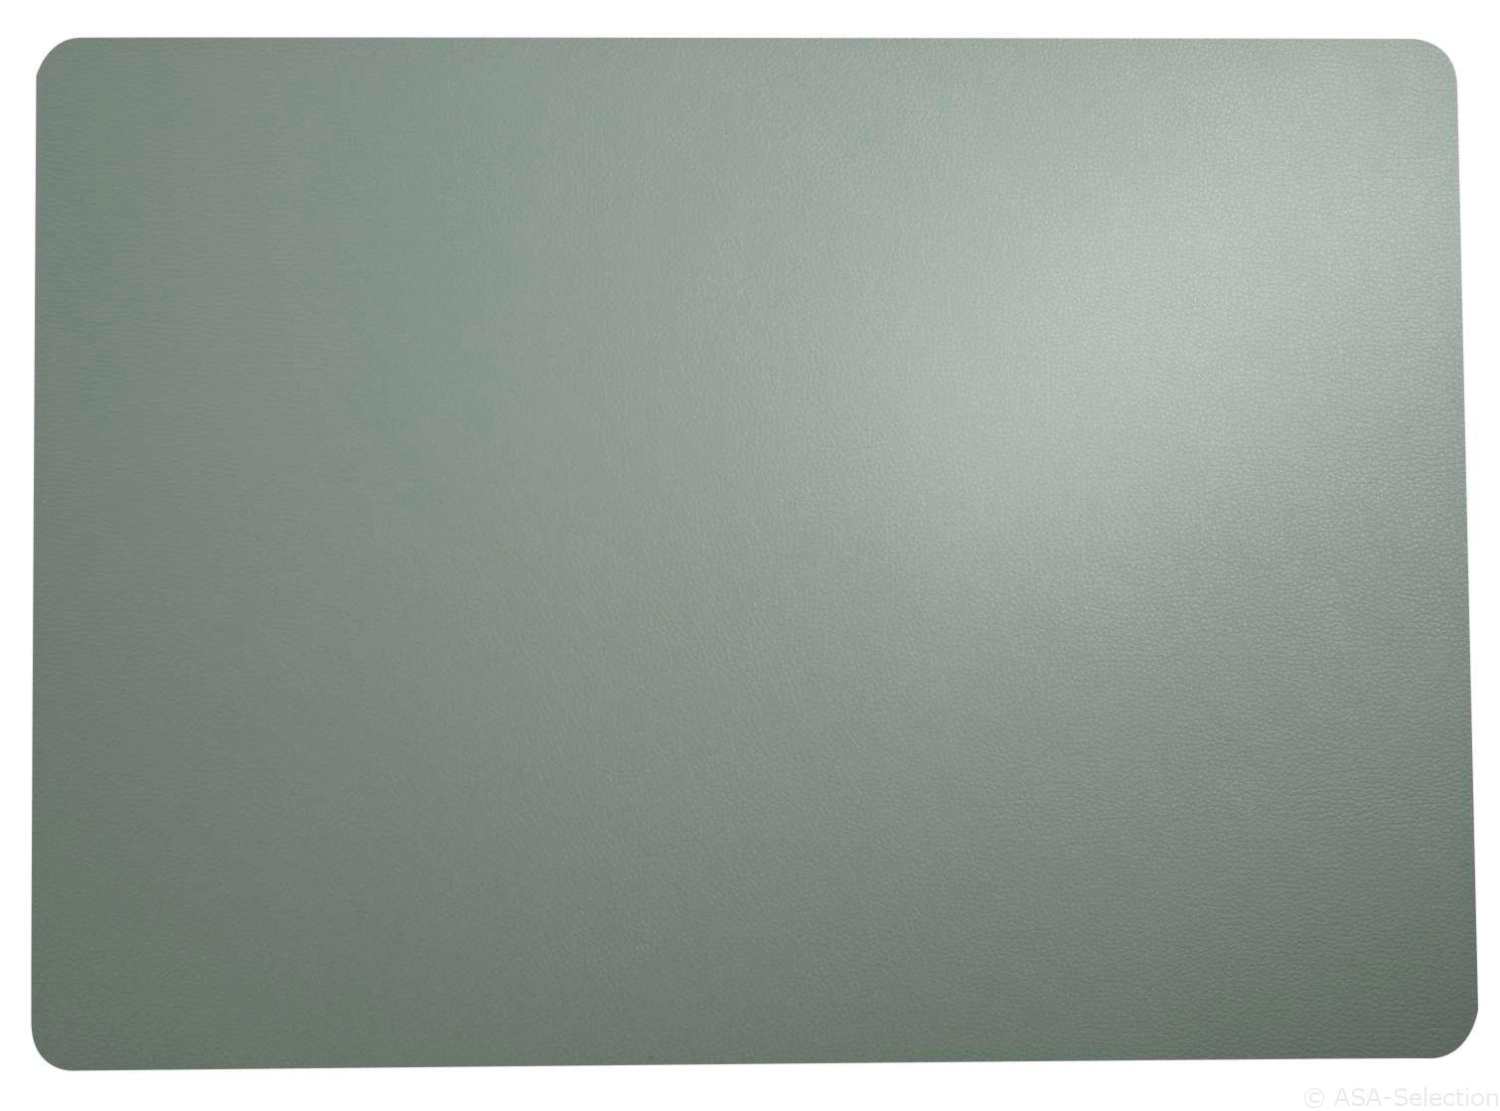 Pvc aspect cuir set de table 33x46cm fine menthe